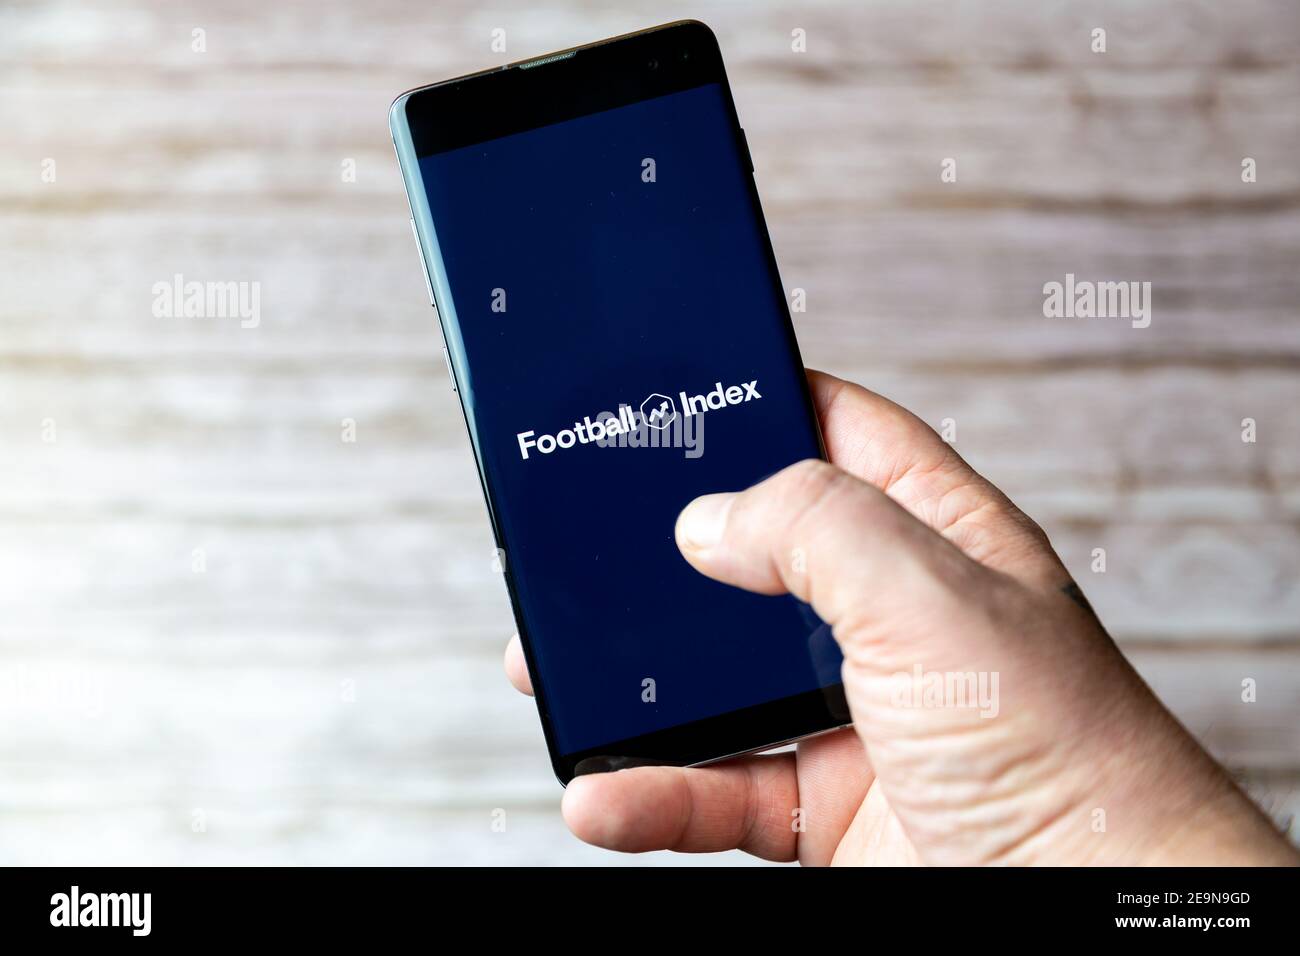 Ein Mobiltelefon oder Mobiltelefon, das/das gehalten wird, zeigt das an Football Index Trading App auf dem Bildschirm geöffnet Stockfoto